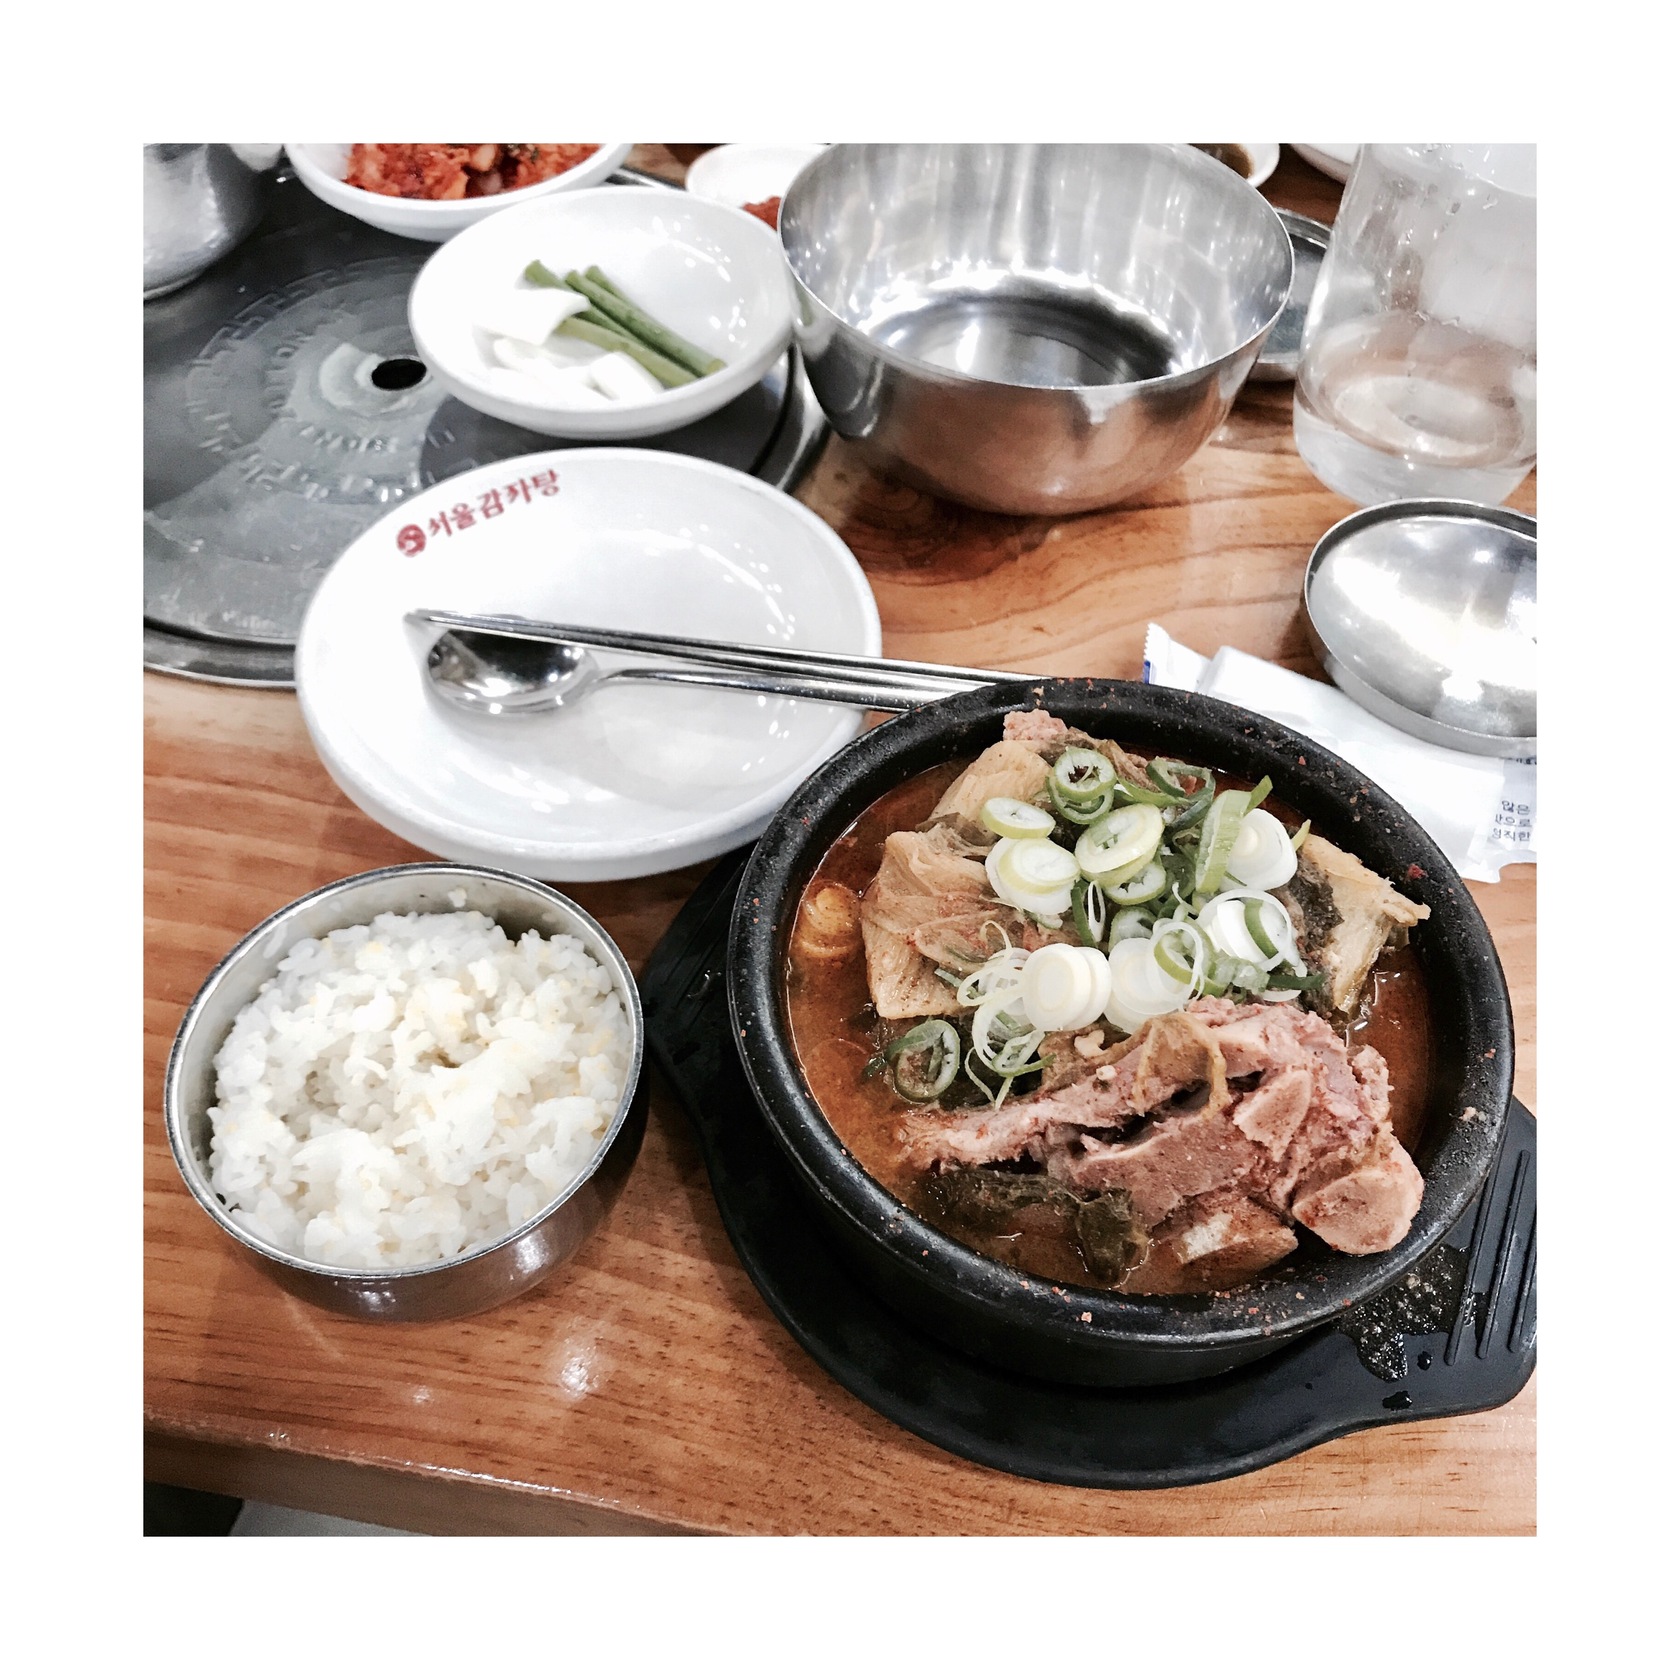 ピョへジャングク | ソウル在住mihoさんのおすすめ料理・食べ物